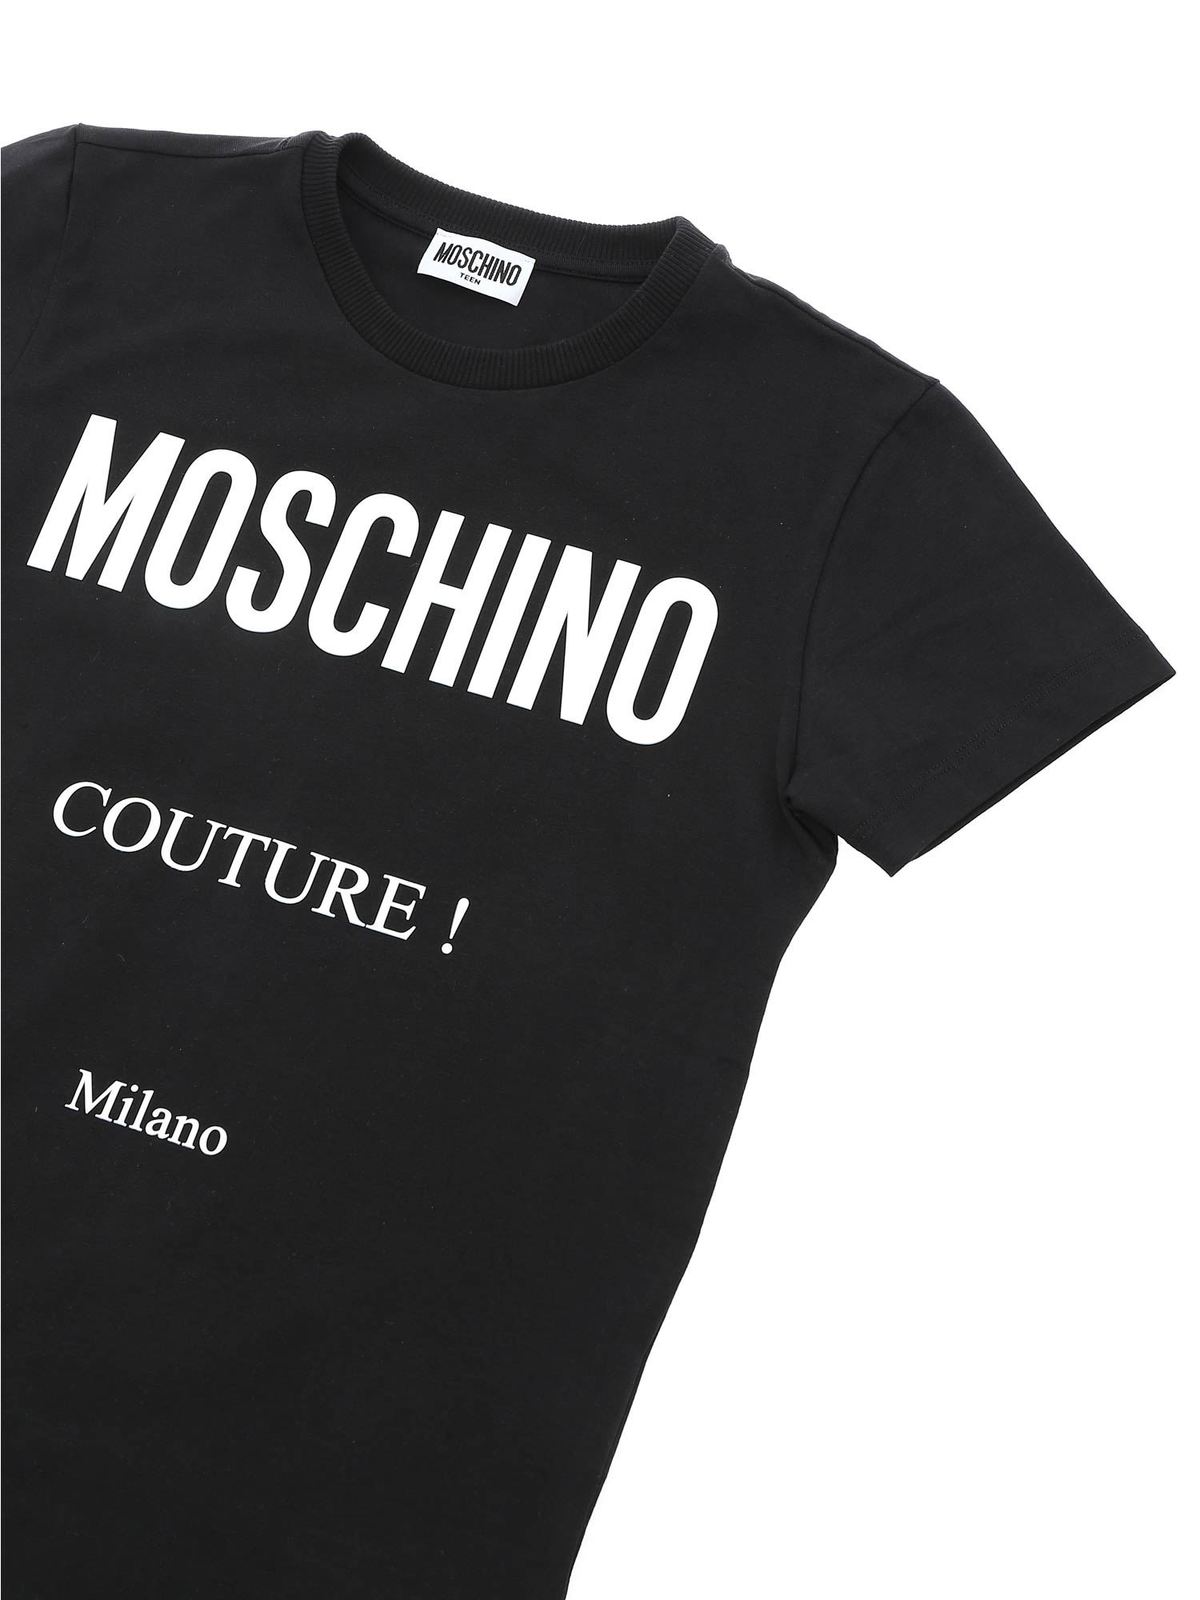 black and white moschino t shirt